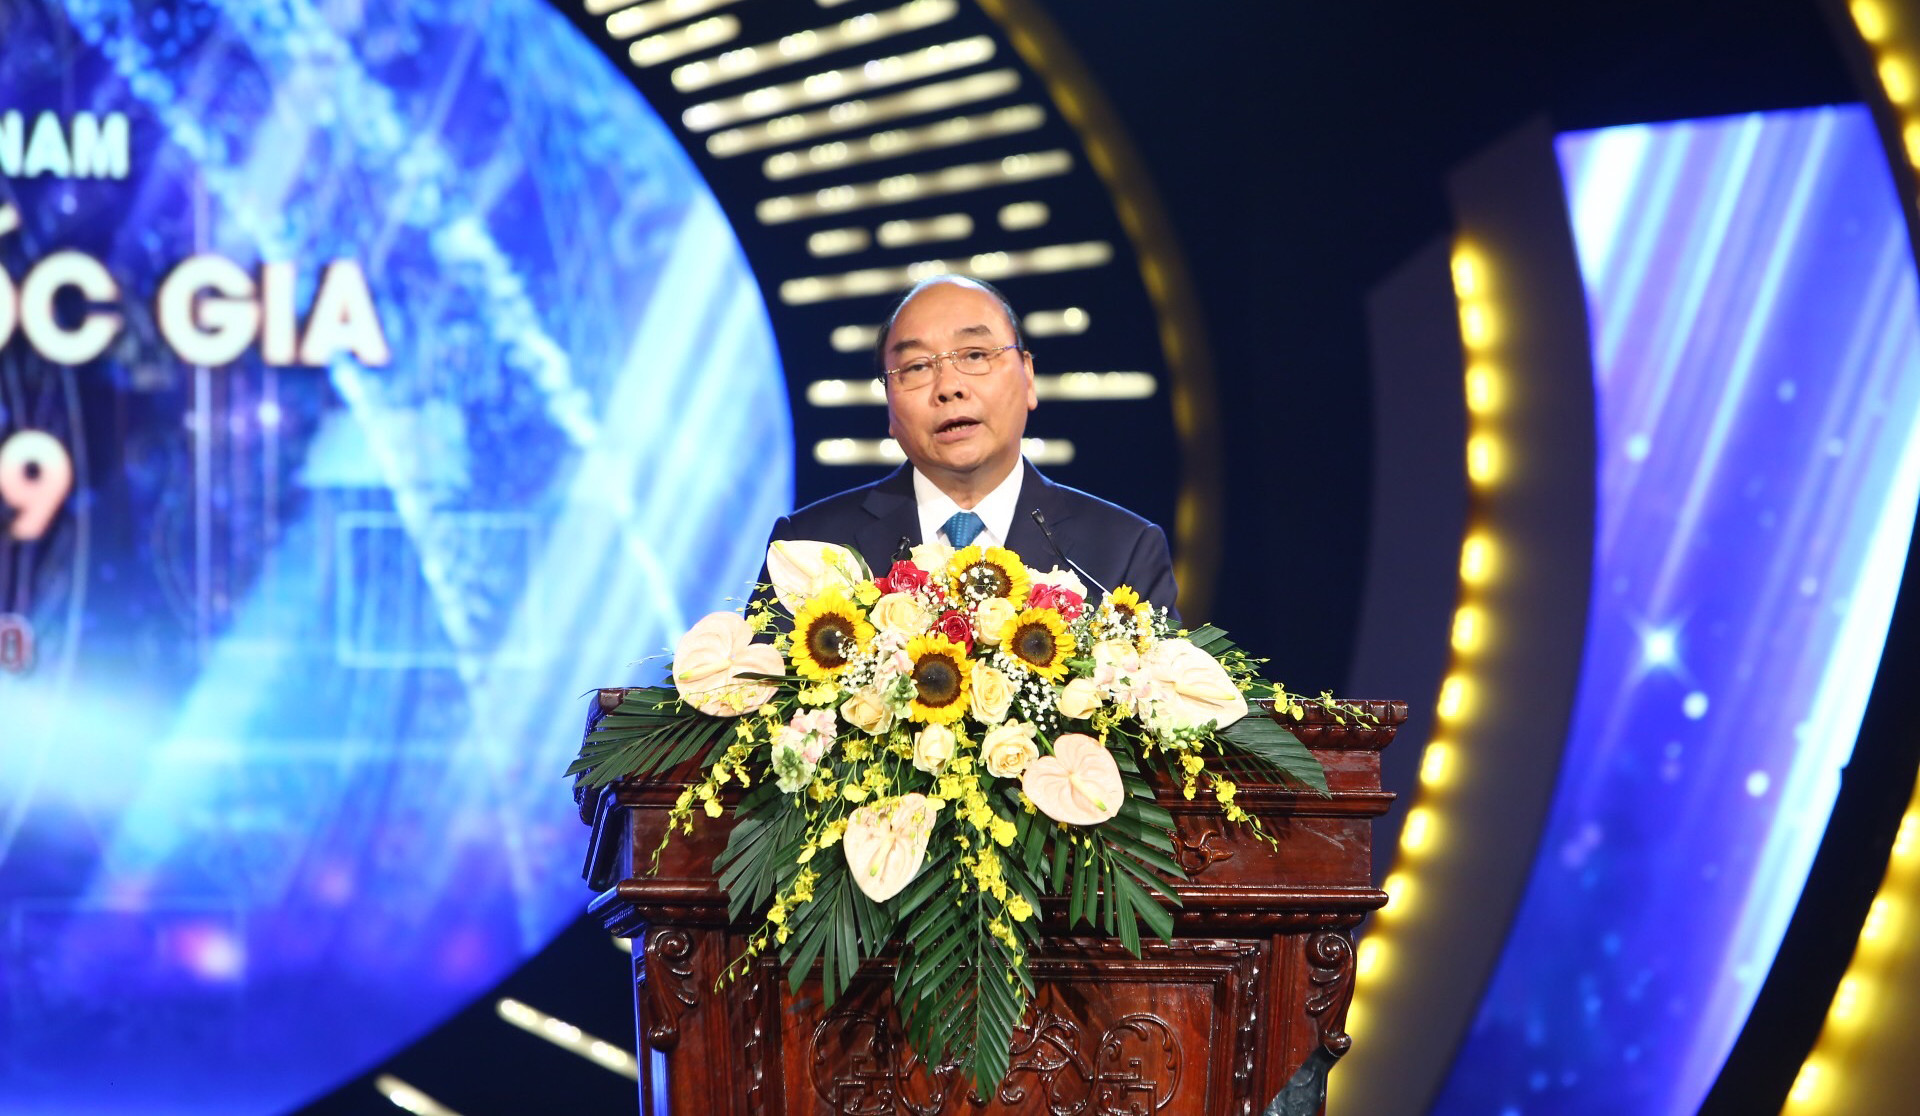 Thủ tướng Nguyễn Xuân Phúc: Báo chí chủ động đi đầu trong chuyển đổi số - Ảnh 1.